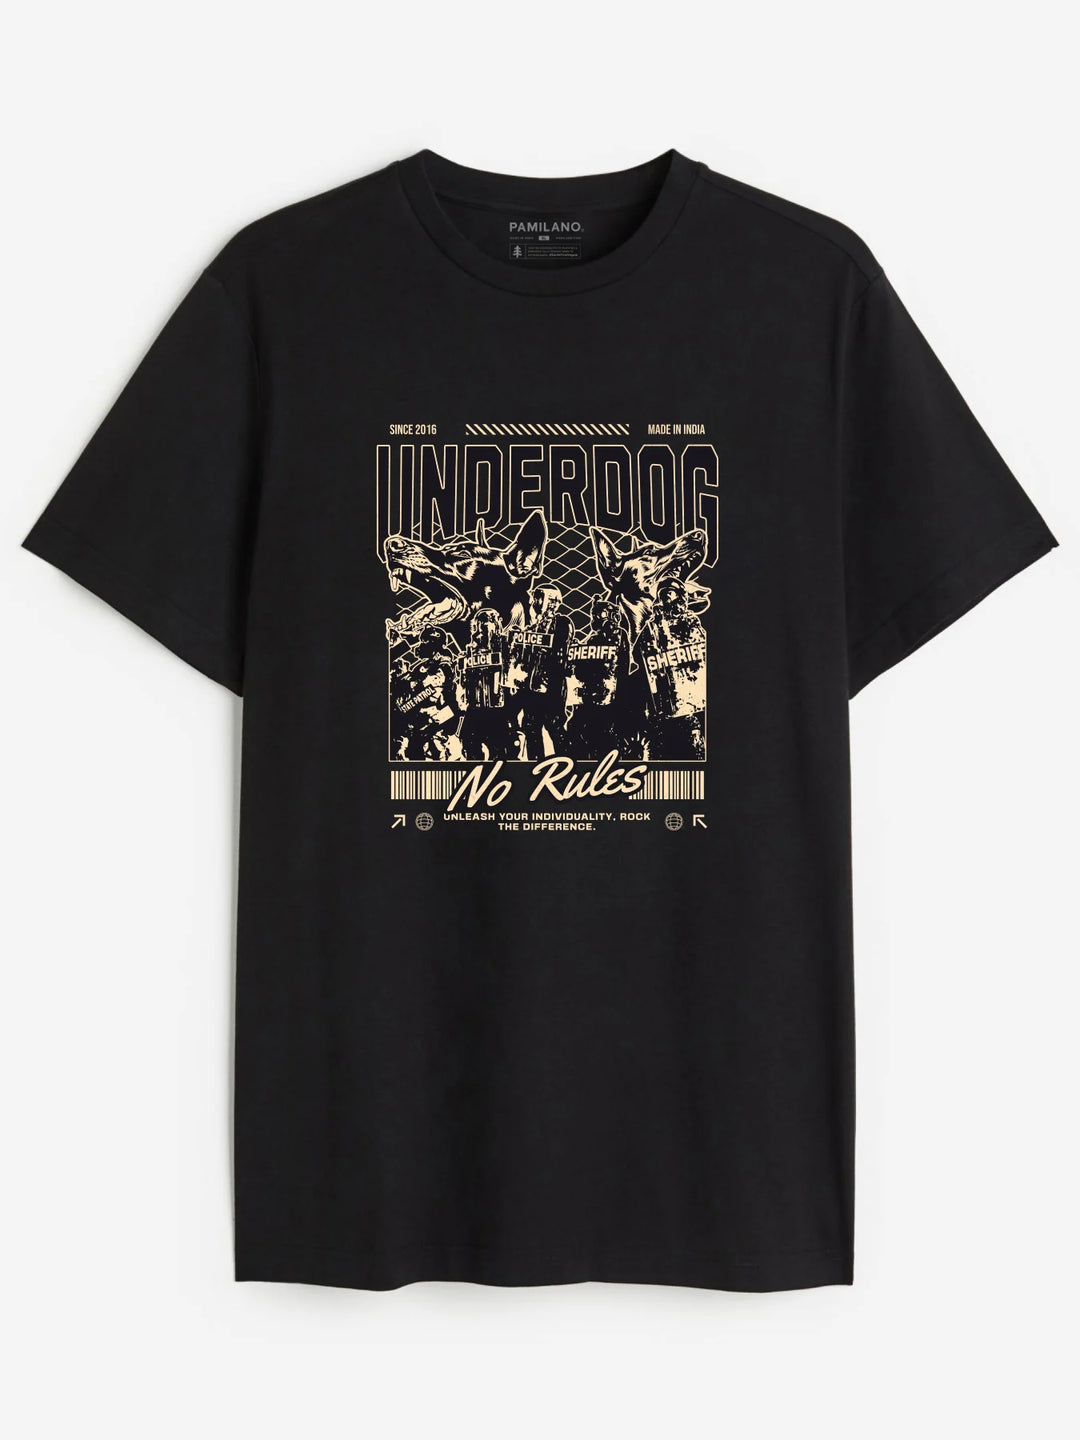 Underdog - Unisex T-Shirt